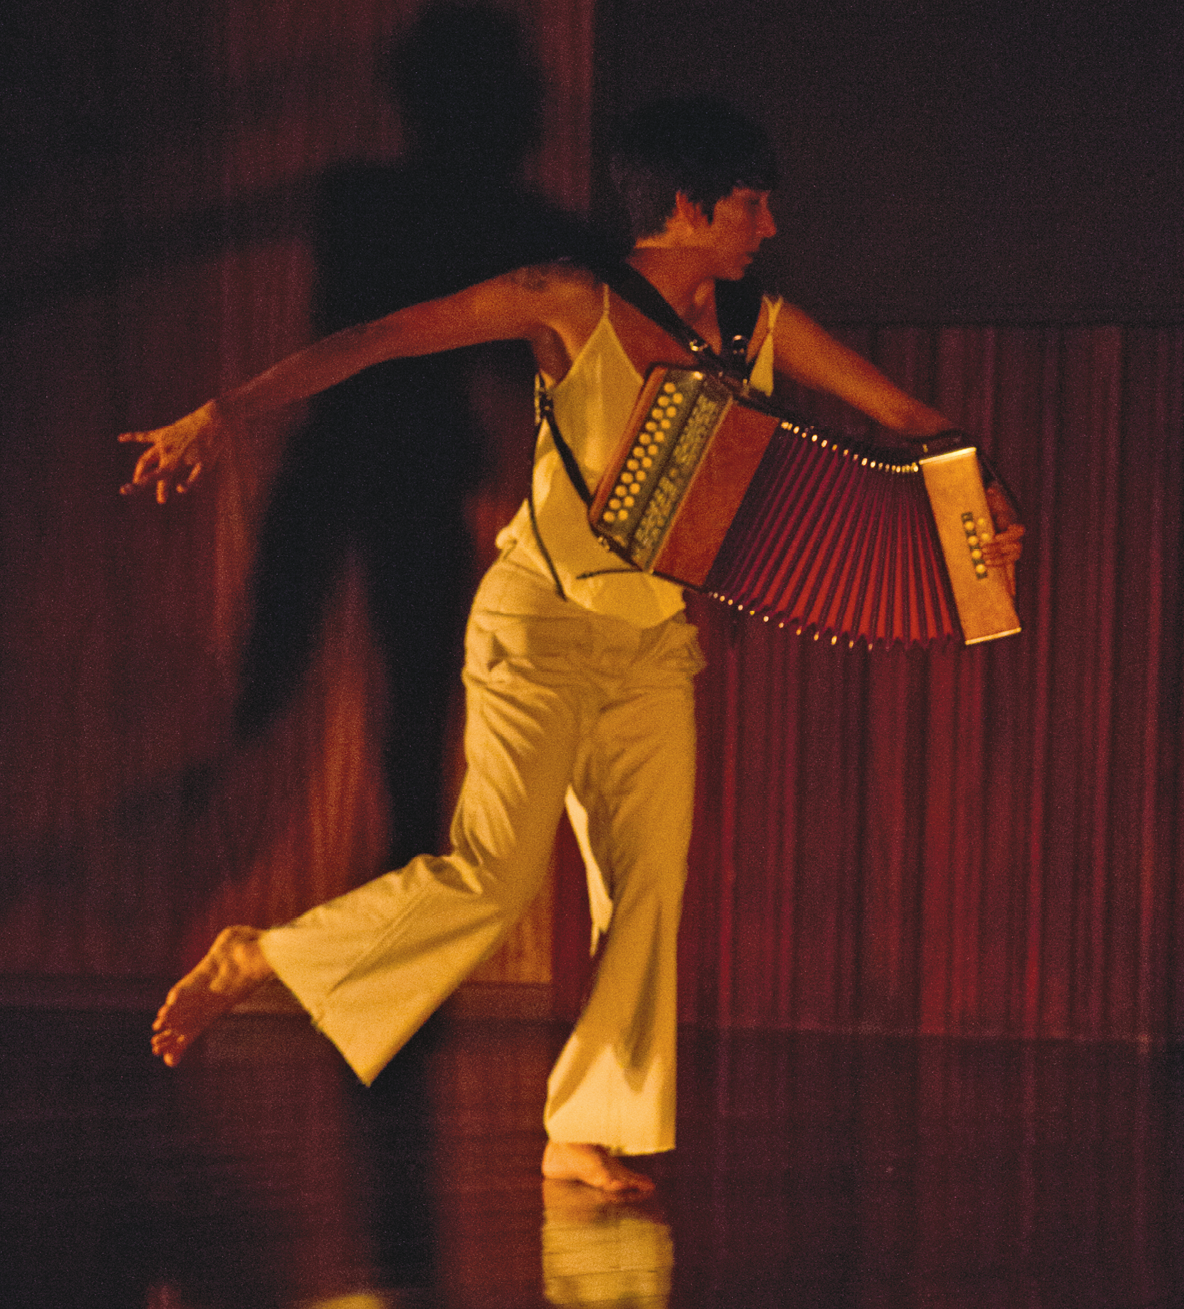 Fotografia. Mulher em um palco, vestida com roupas brancas, carrega acordeão e realiza movimento de dança, com uma das pernas suspensa e um braço levantado.